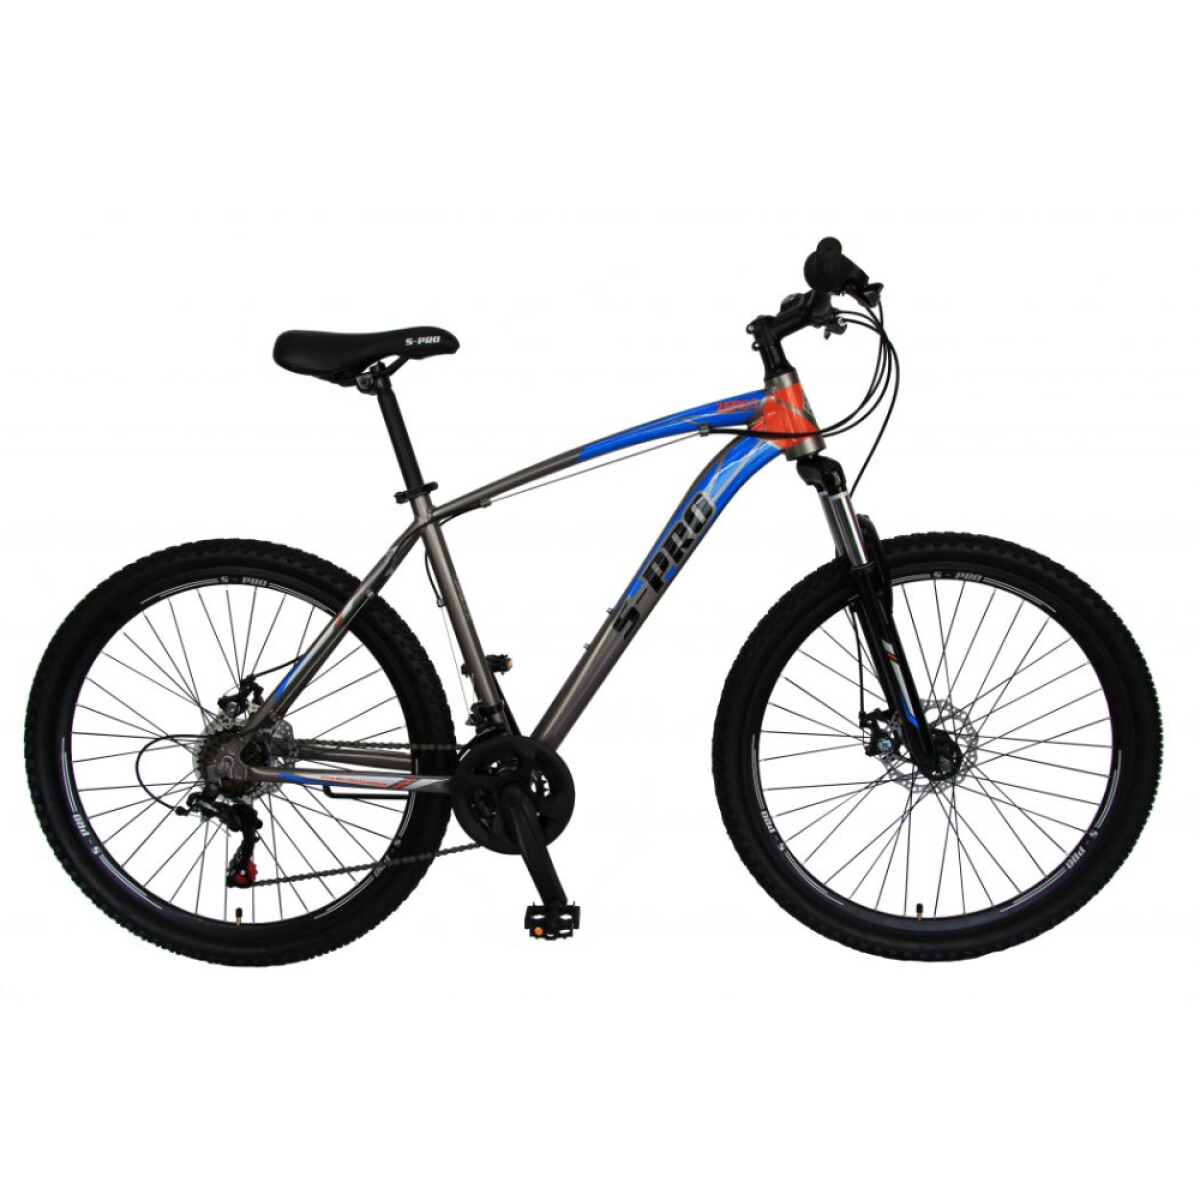 Bicicleta S-Pro Zero3 27.5 Man - Azul y Naranja 